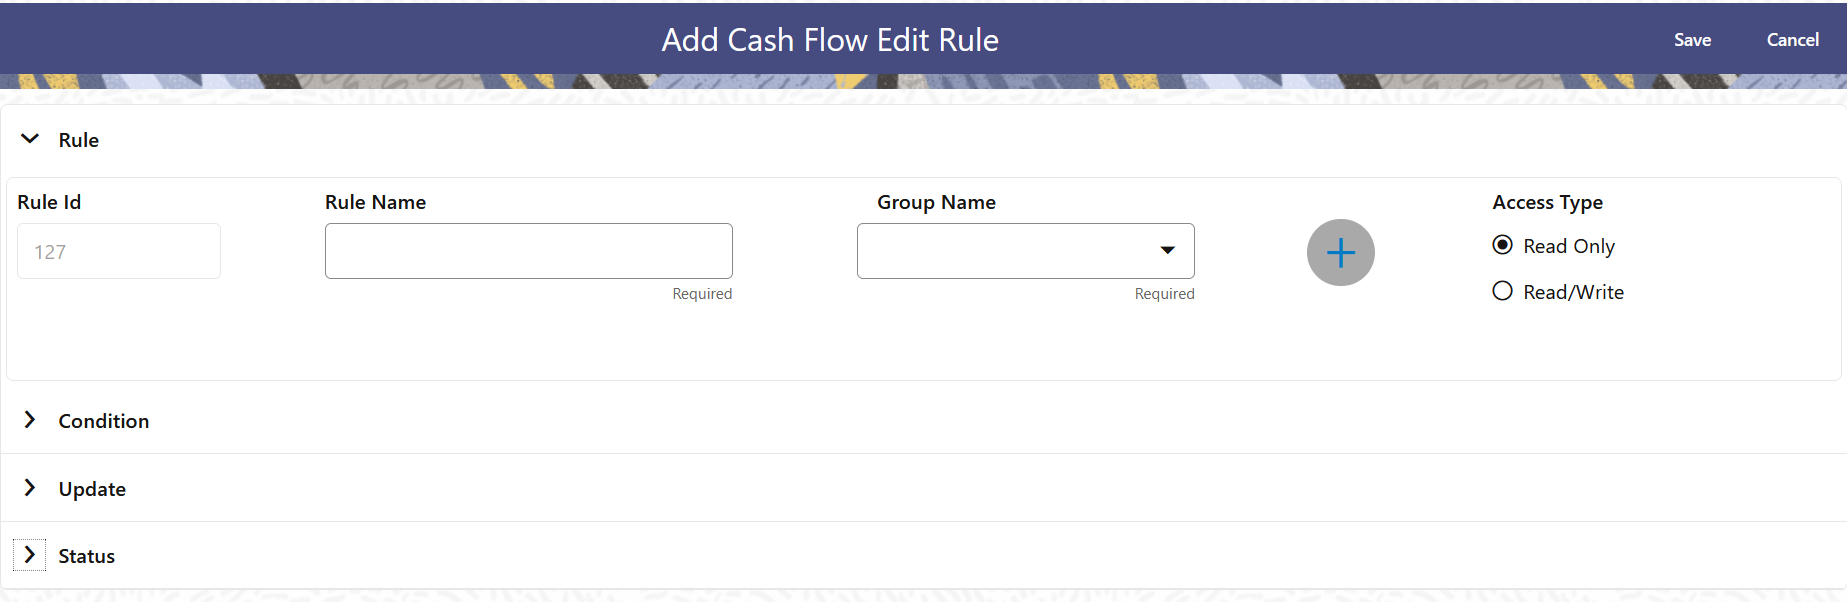 Add Cash Flow Edits Rule